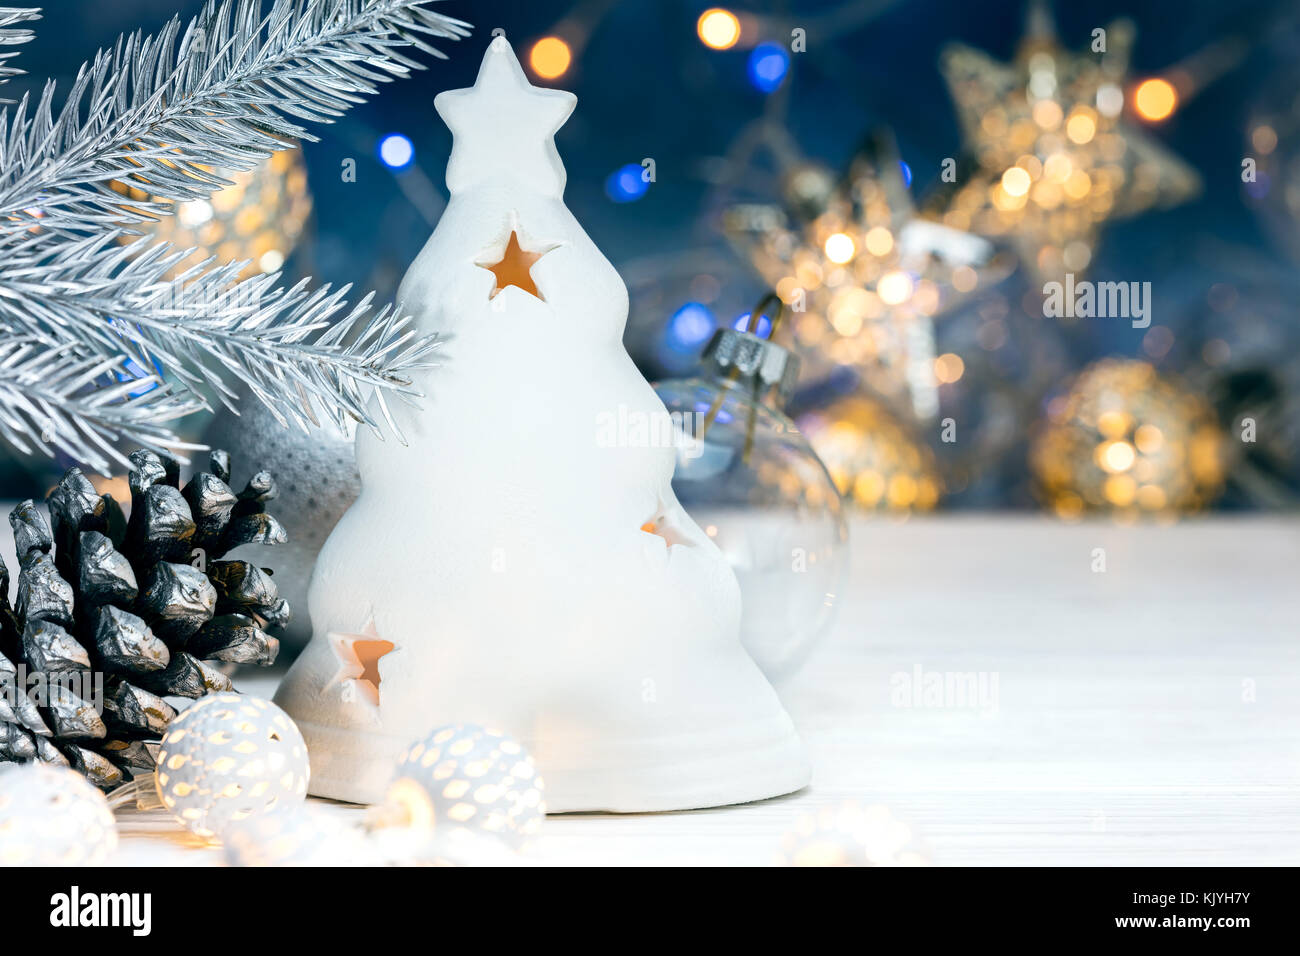 Weihnachtsschmuck, Fir Tree Branch mit Kegel auf unscharfen Hintergrund blau mit Girlande Lichter Stockfoto